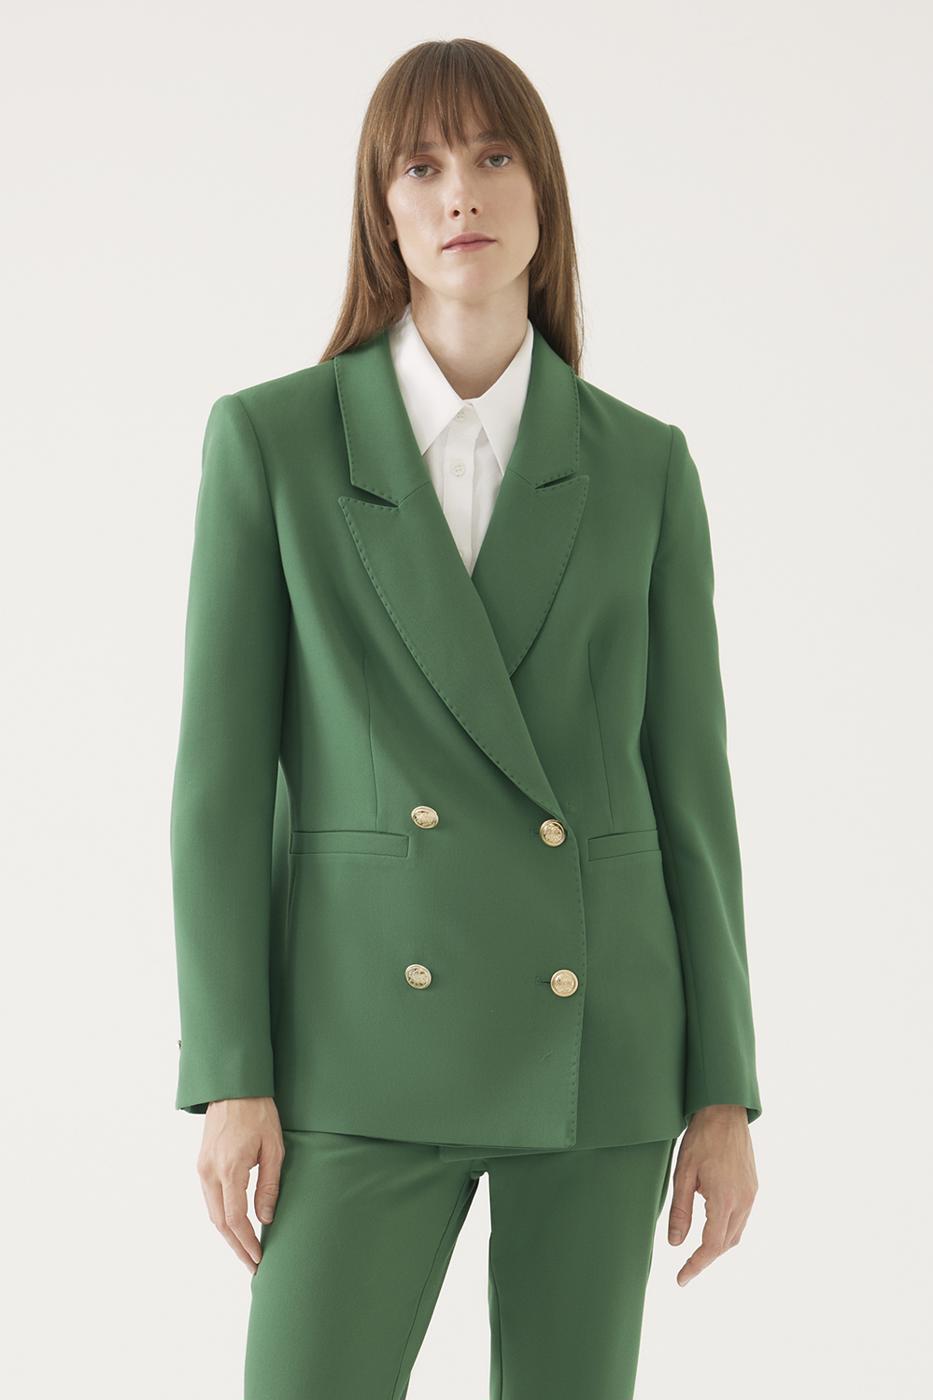 İbbie Regular Fit Standart Boy Takma Kol Ceket Yaka Zümrüt Yeşili Renk Kadın Ceket